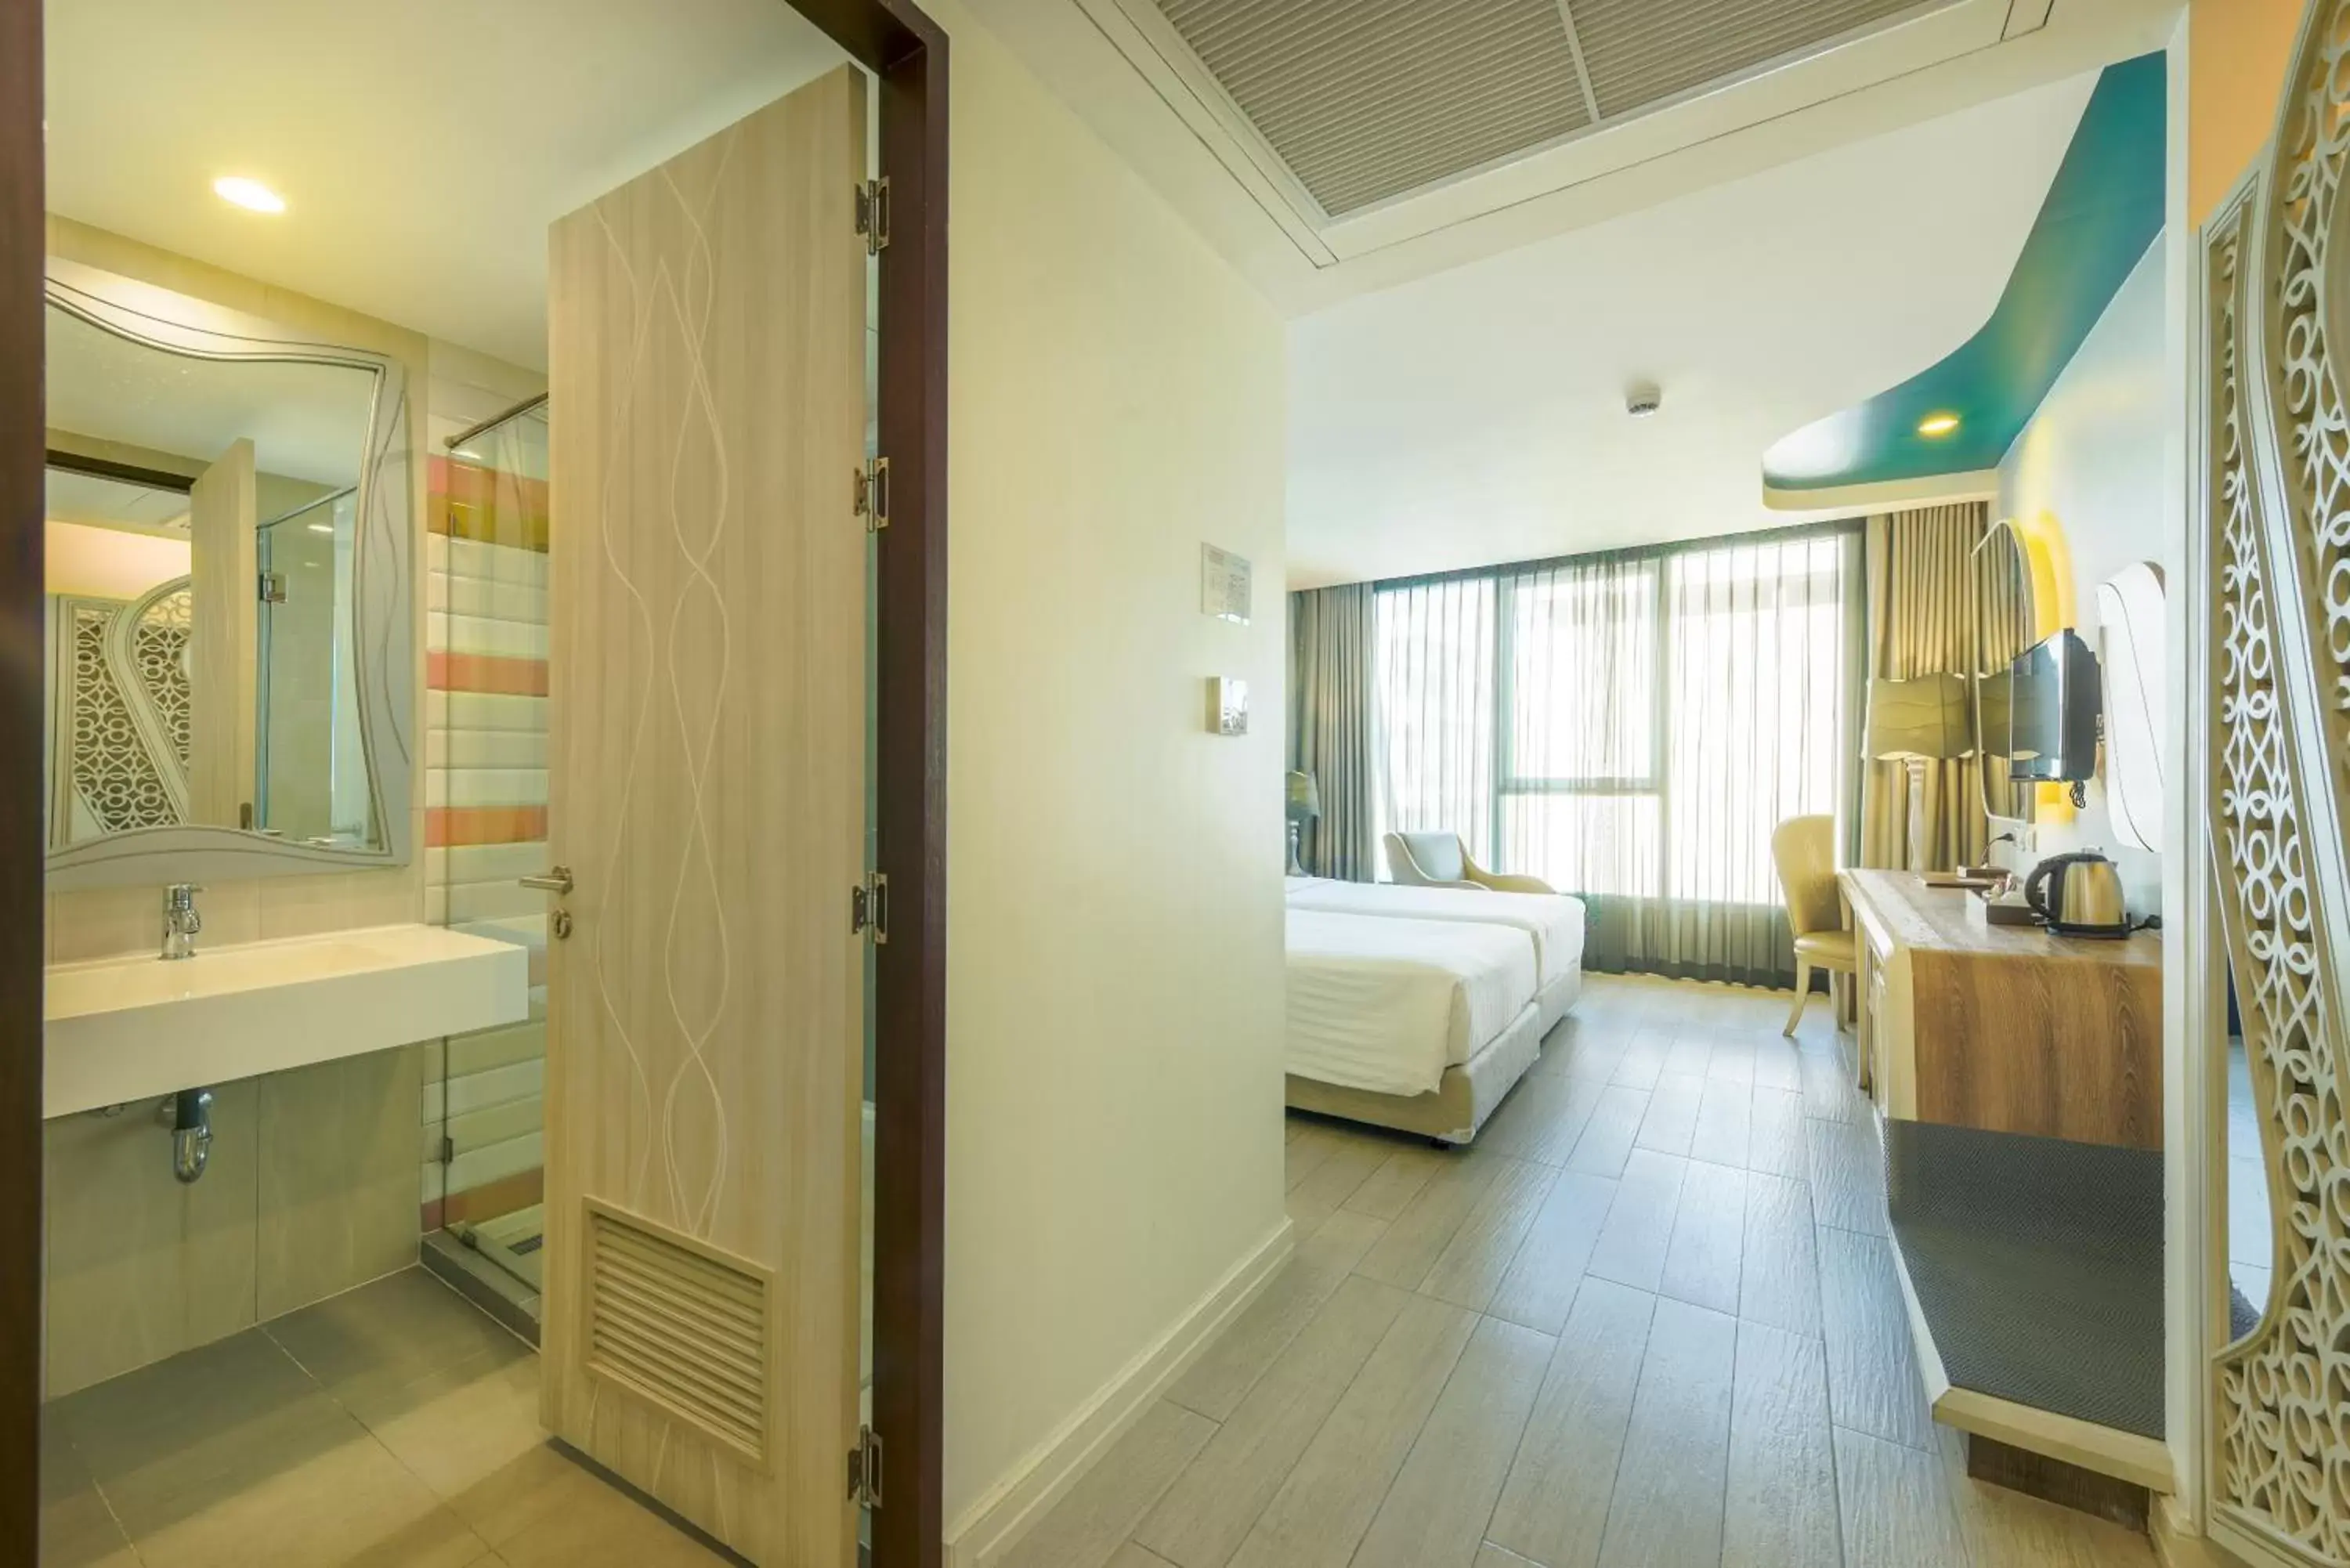 Area and facilities, Bathroom in Le Tada Parkview Hotel - SHA Plus